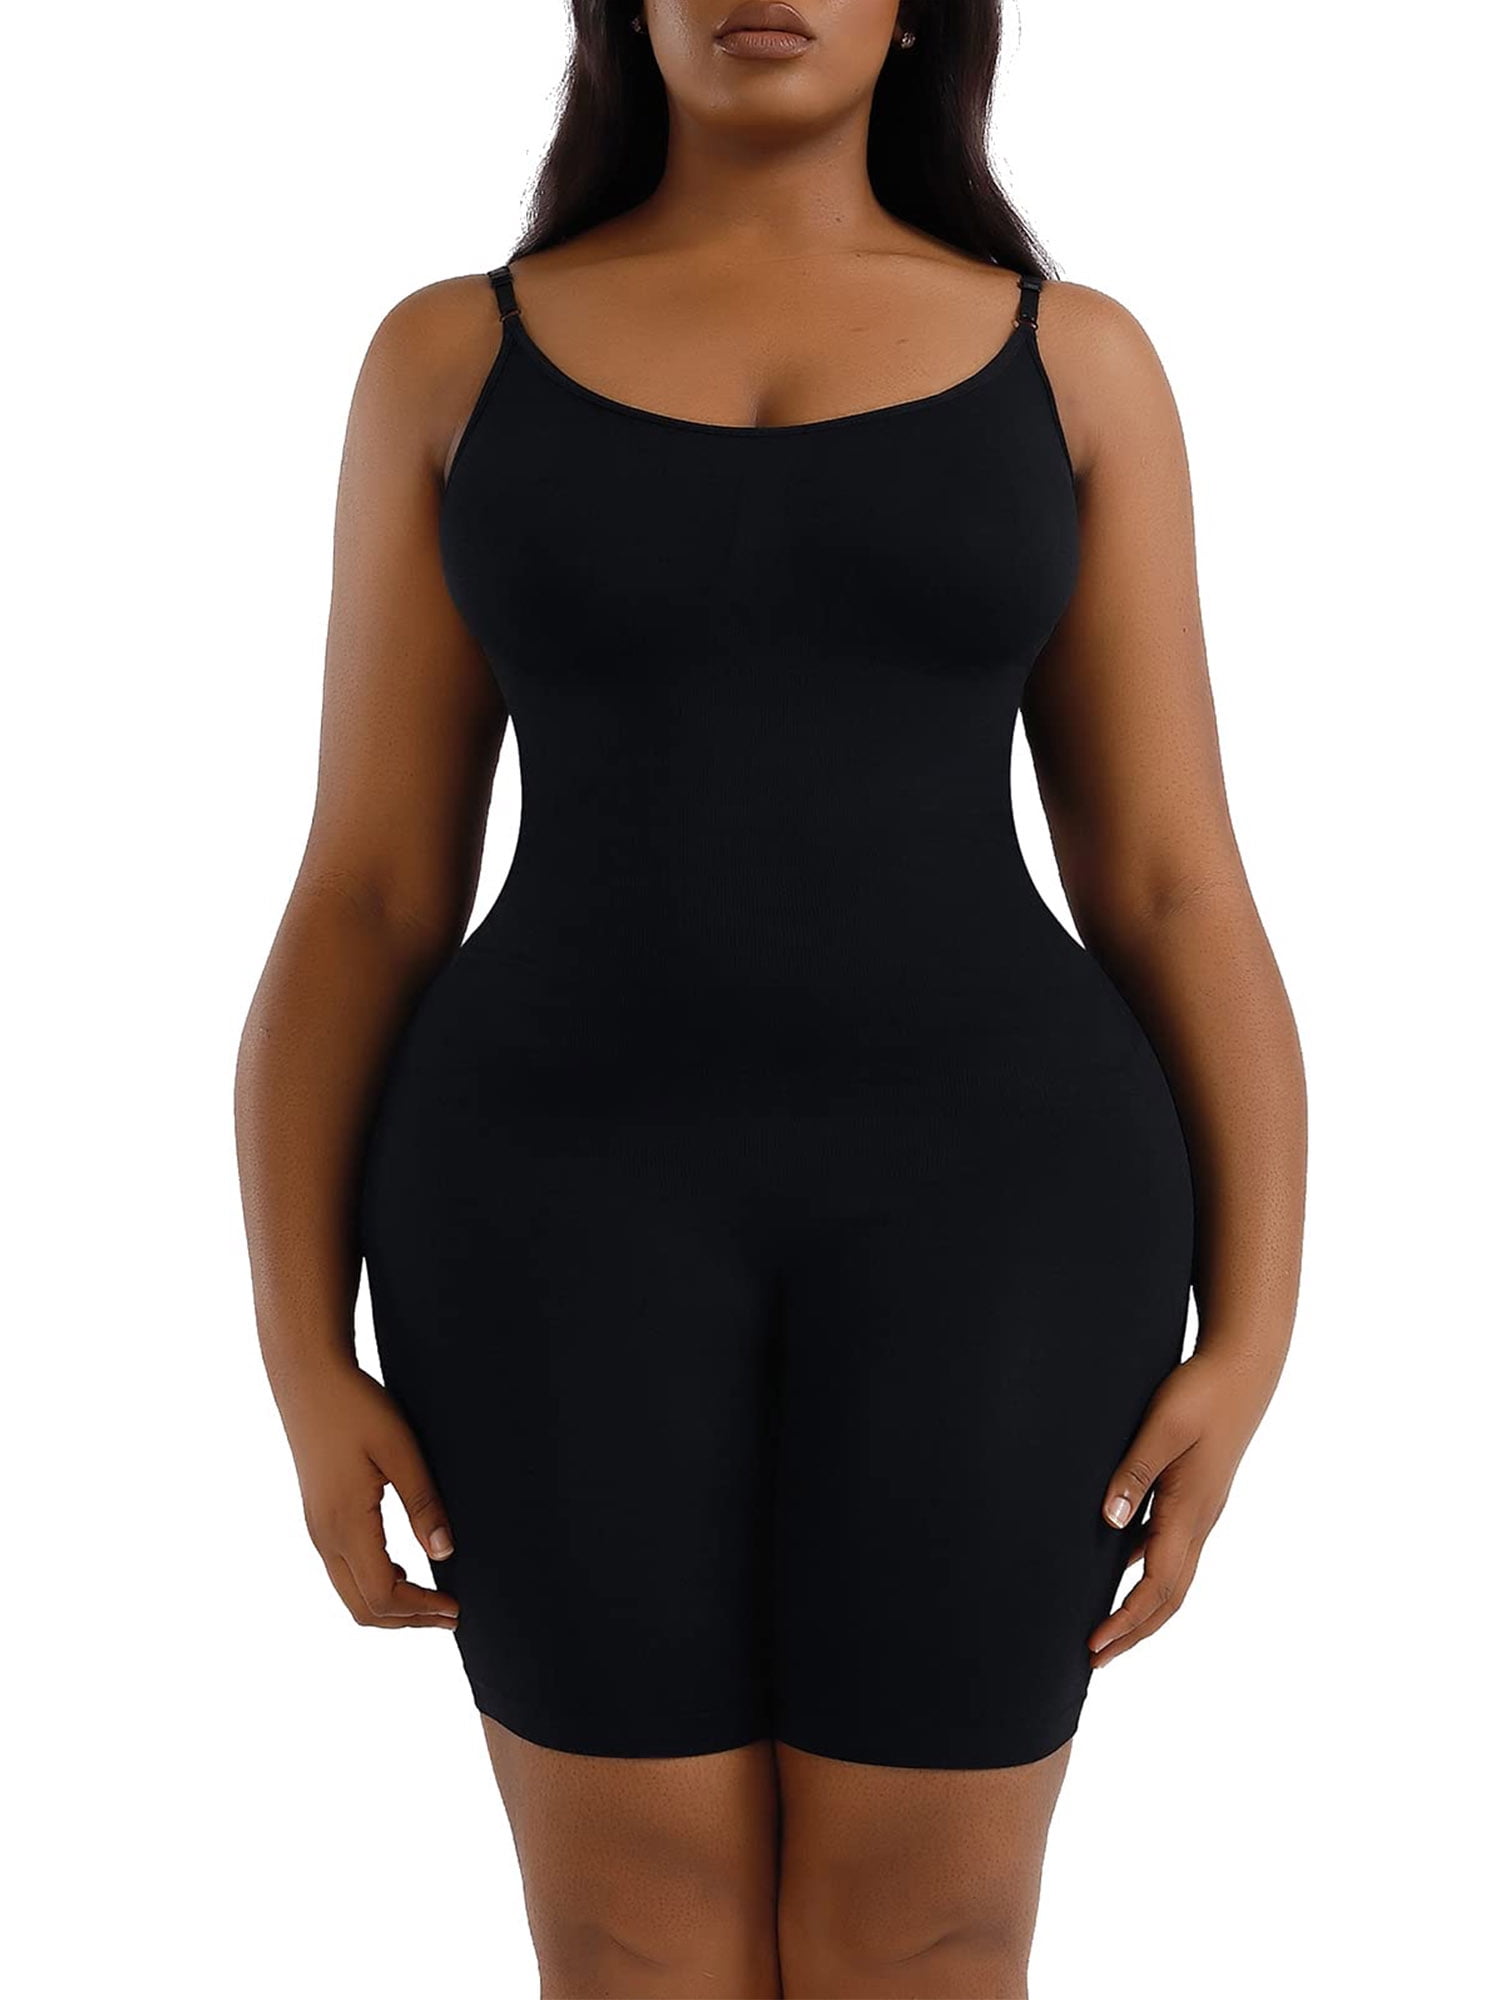 SHAPERIN Women Bodysuit Shapewear Tummy Control Compression Garments for Women  Black M - Yahoo Shopping